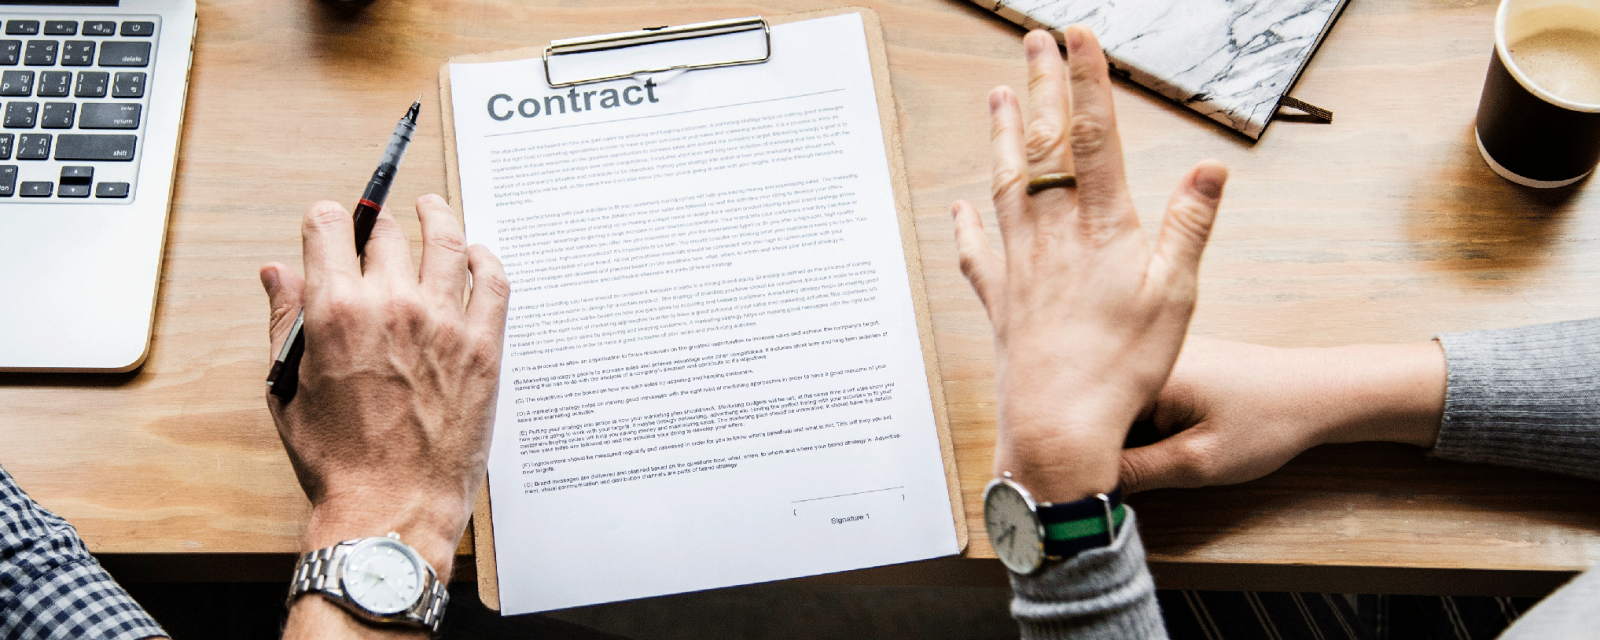 Imagem de um contrato sobre uma mesa com mãos de duas pessoas gesticulando em sinal de acordo